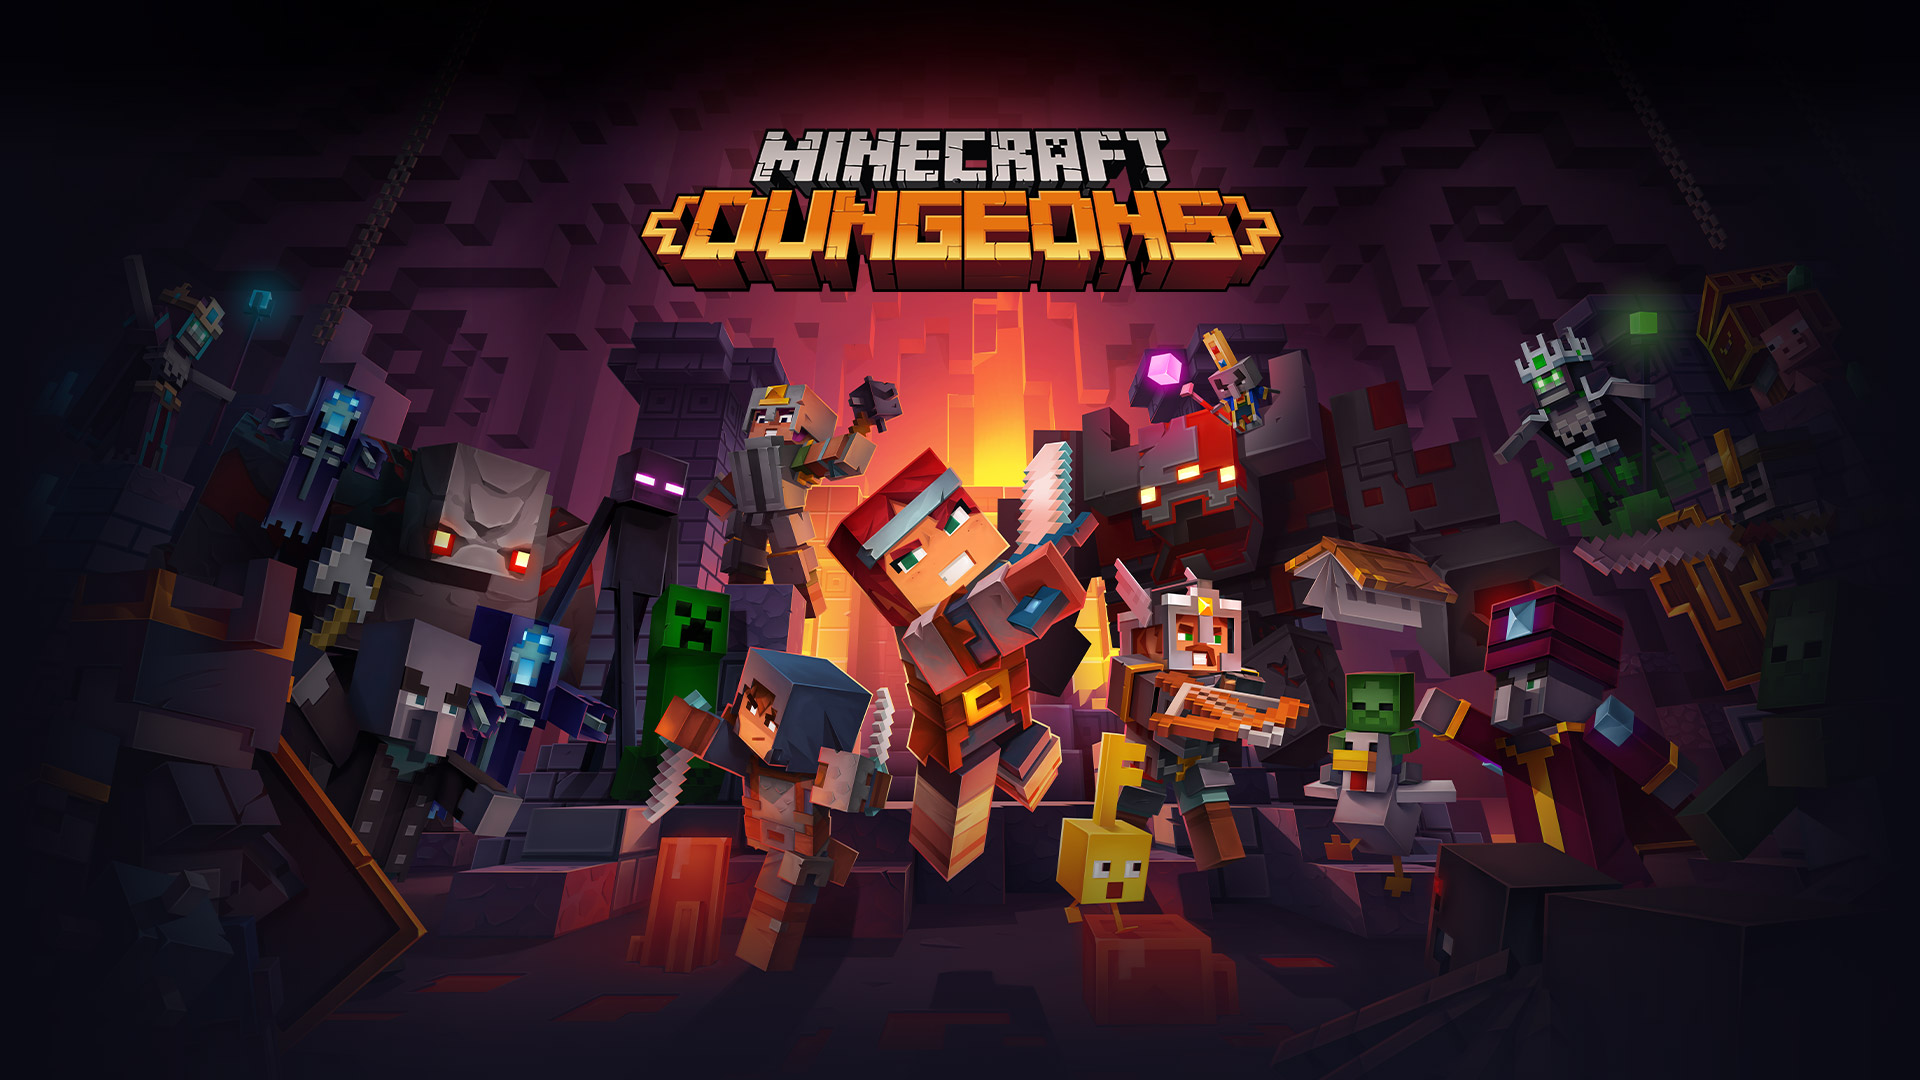 Логотип Minecraft Dungeons перед всеми персонажами Minecraft, которые сражаются в подземелье